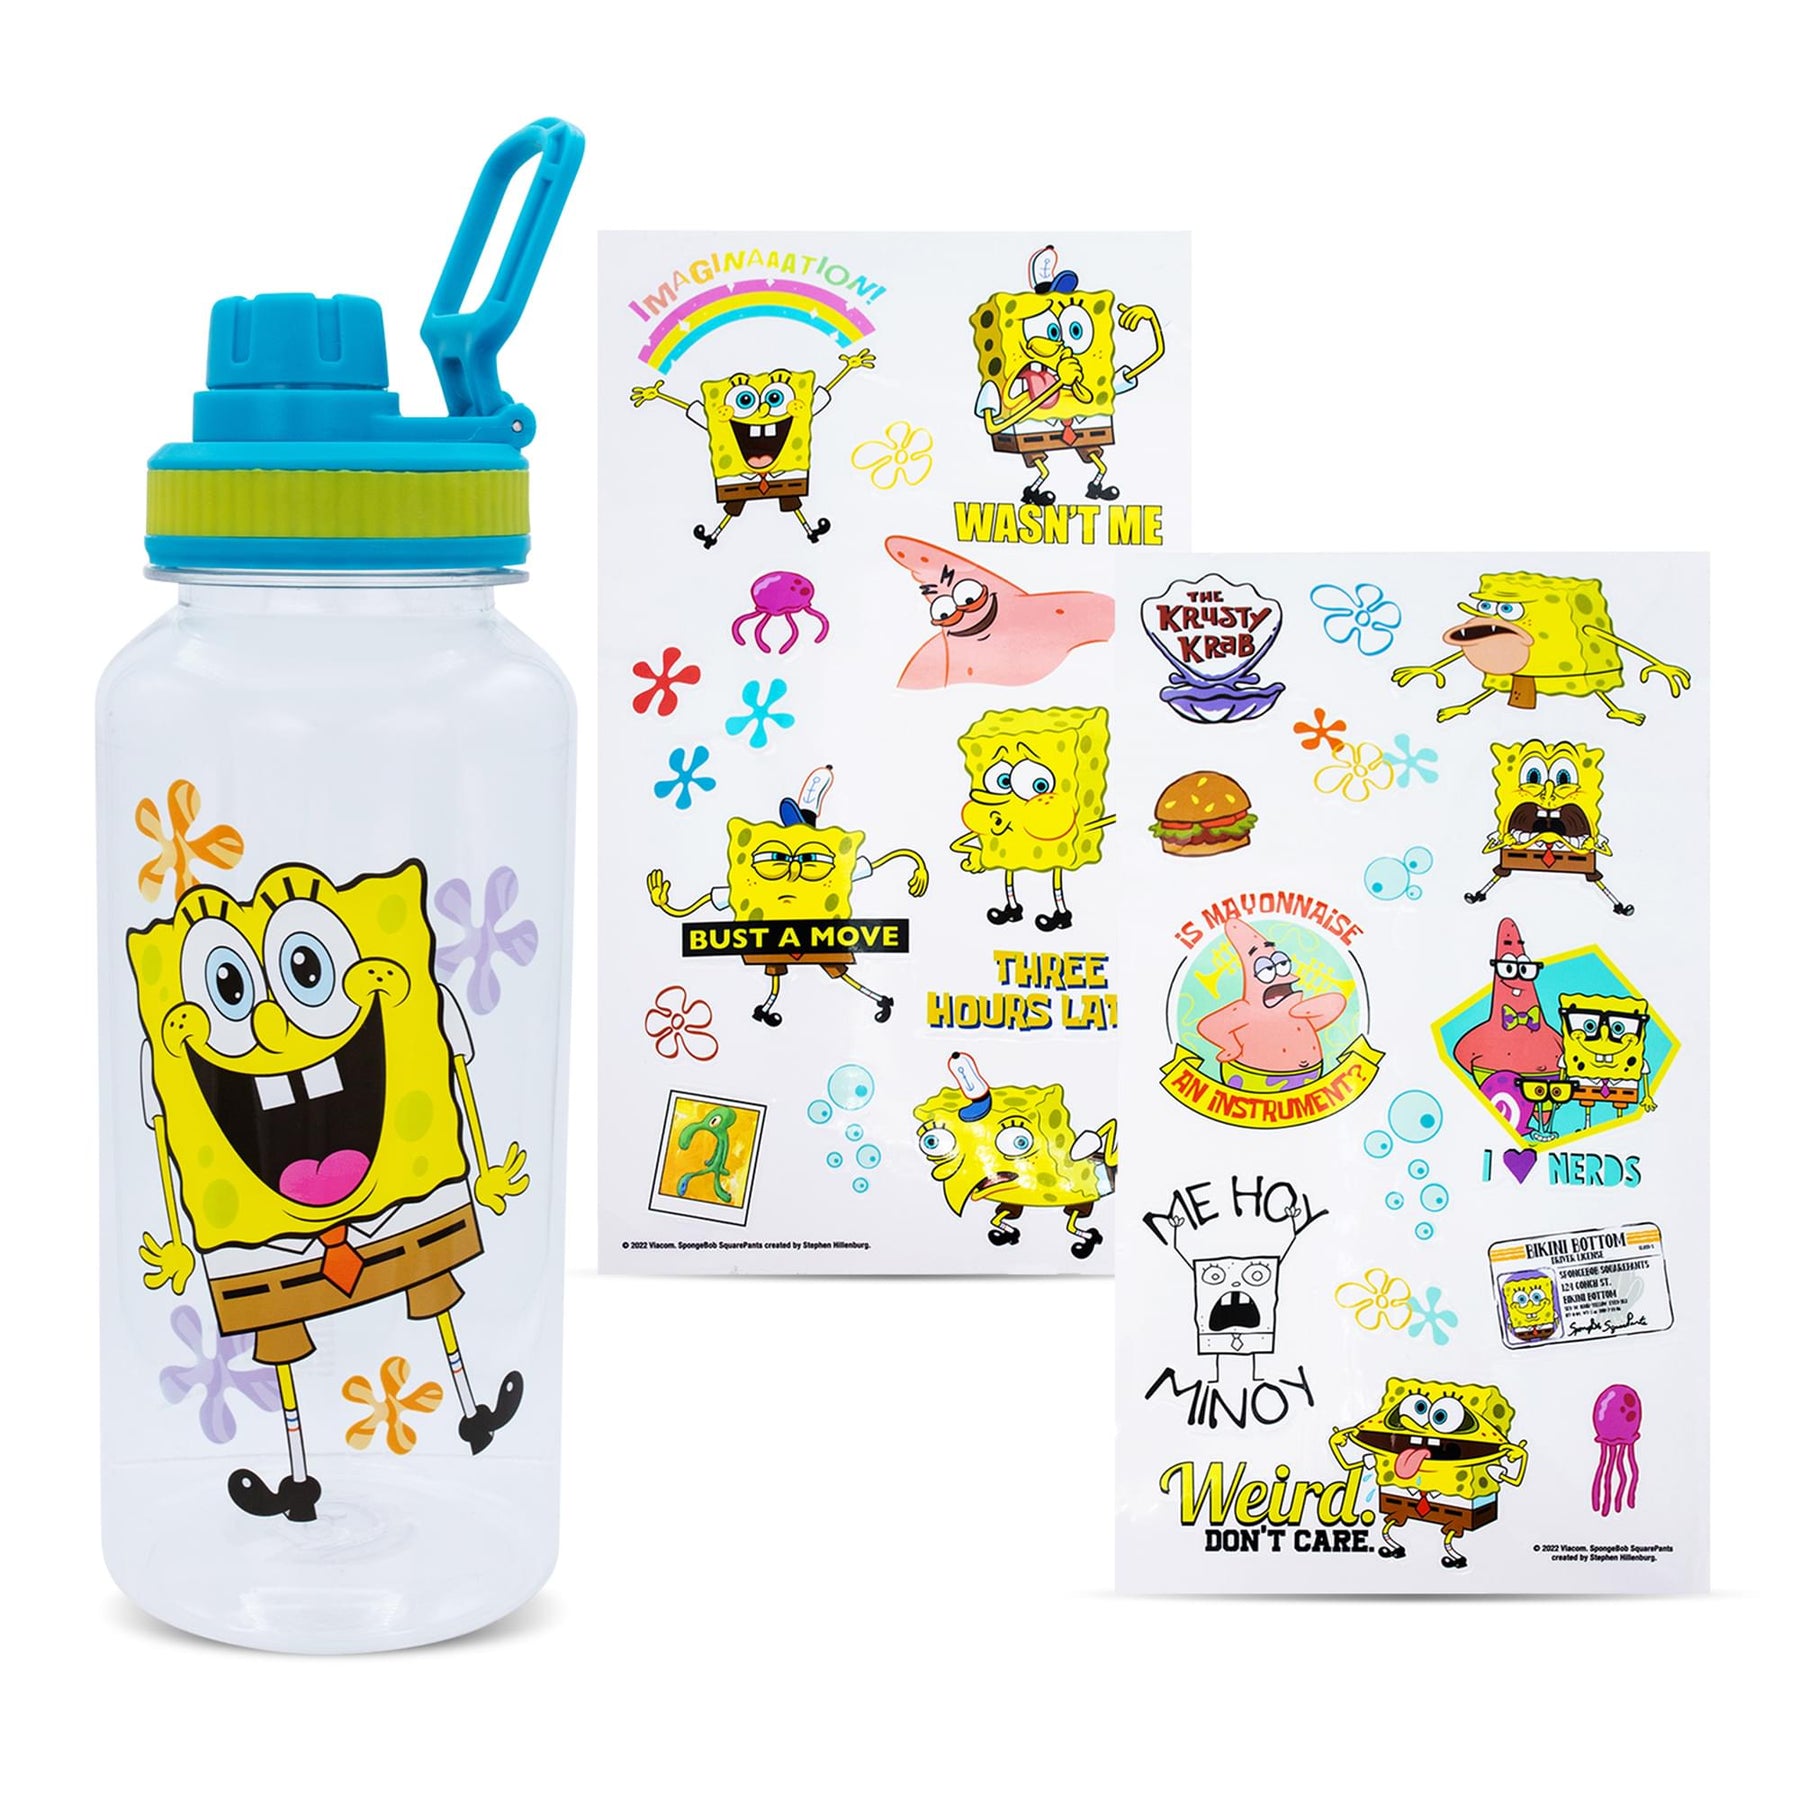 SpongeBob SquarePants Happy Laugh Flowers Twist Spout Water Bottle & Sticker Set